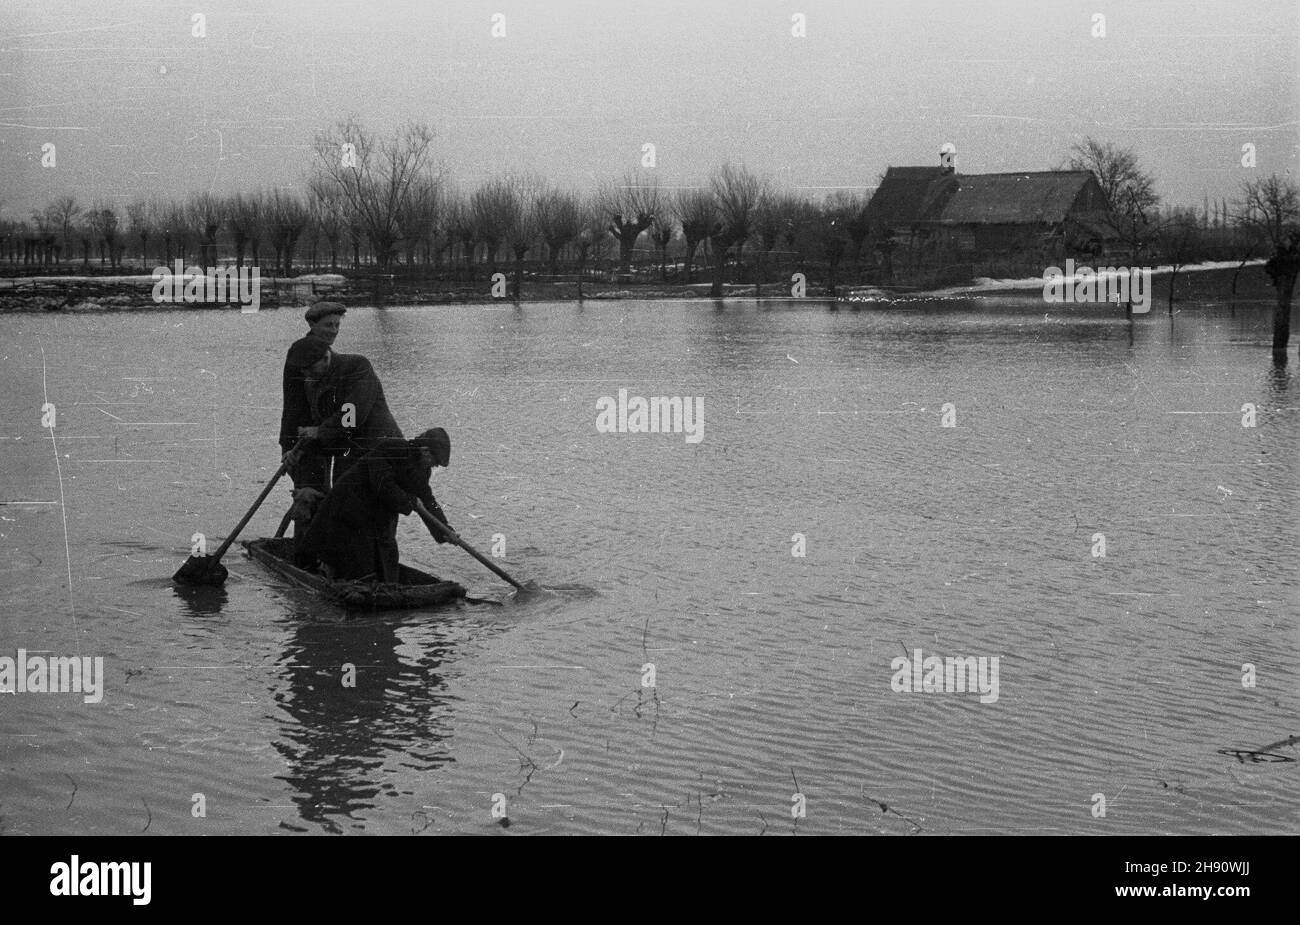 Wyszogród, 1947-03. Wiosenna powódŸ roztopowa na Wiœle, spotêgowana zatorami lodowymi. Nz. powodzianie w prowizorycznej ³ódce z drewnianego koryta. kw  PAP  Dok³adny dzieñ wydarzenia nieustalony.      Wyszogrod, March 1947. Spring flood on the Vistula River, intensified by ice jams. Pictured: flood victims in wooden trough serving as a makeshift boat.  kw  PAP Stock Photo